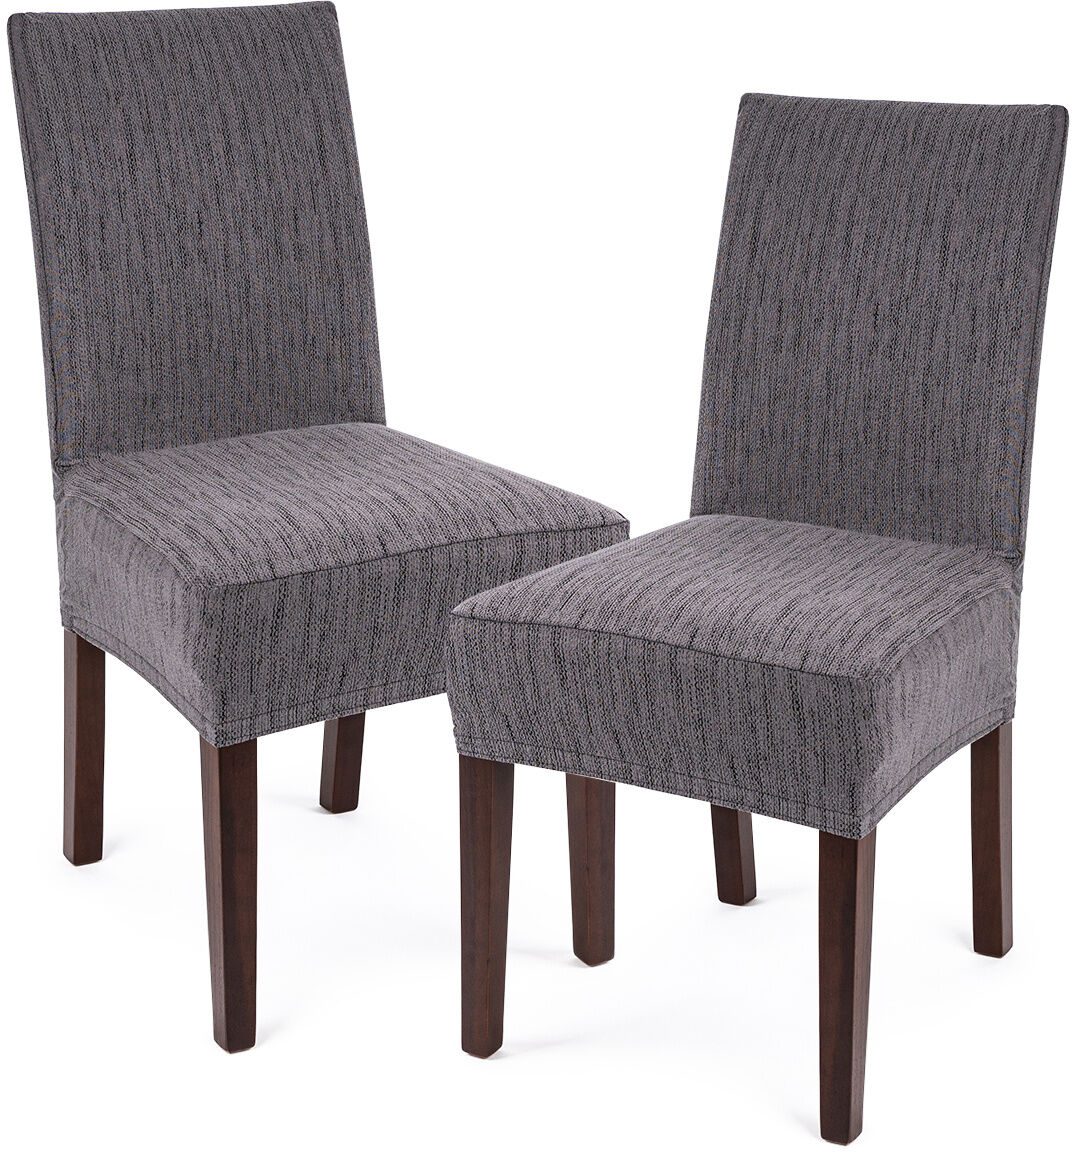 4Home Elastyczny pokrowiec na krzesło Comfort Plus Classic, 40 - 50 cm, komplet 2 szt.